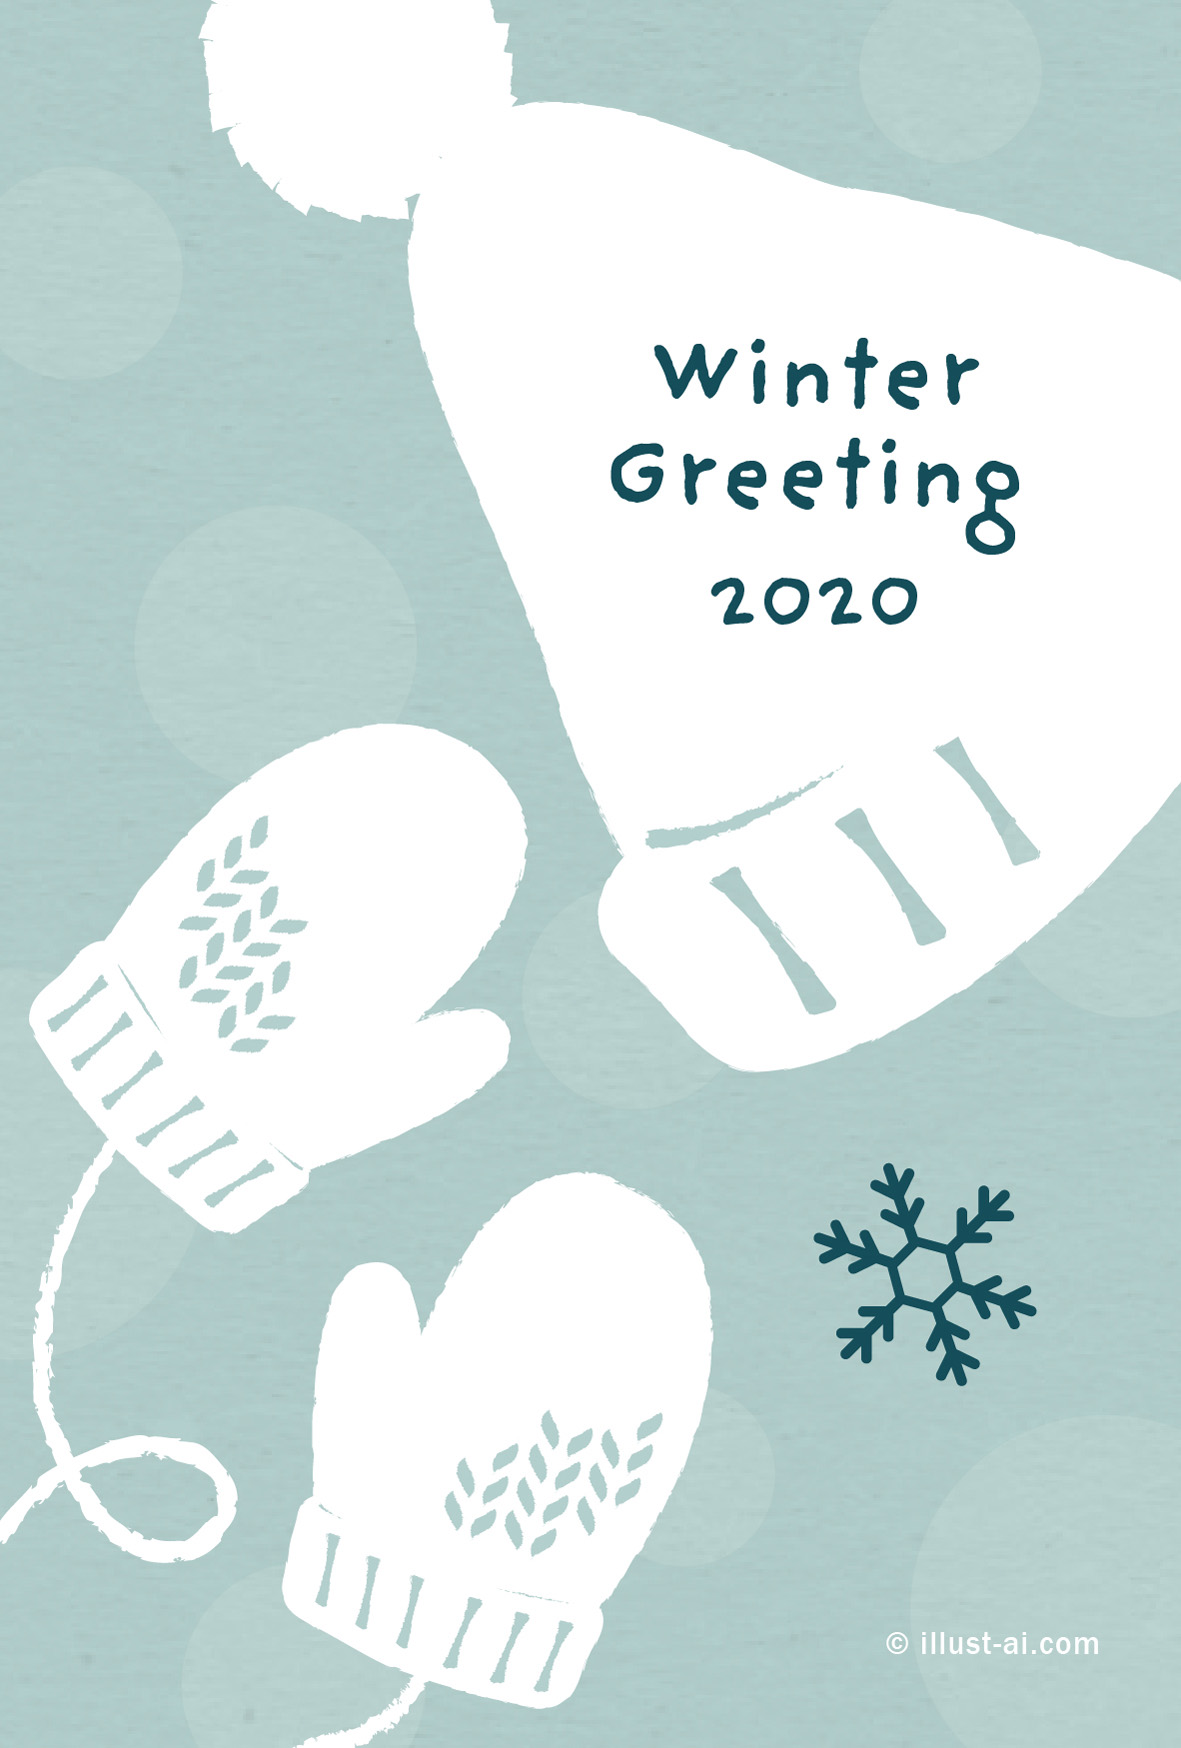 真っ白な手袋と帽子のグリーティングカード 寒中お見舞い19 ポストカード イラスト素材サイト イラストareira Postcard Template